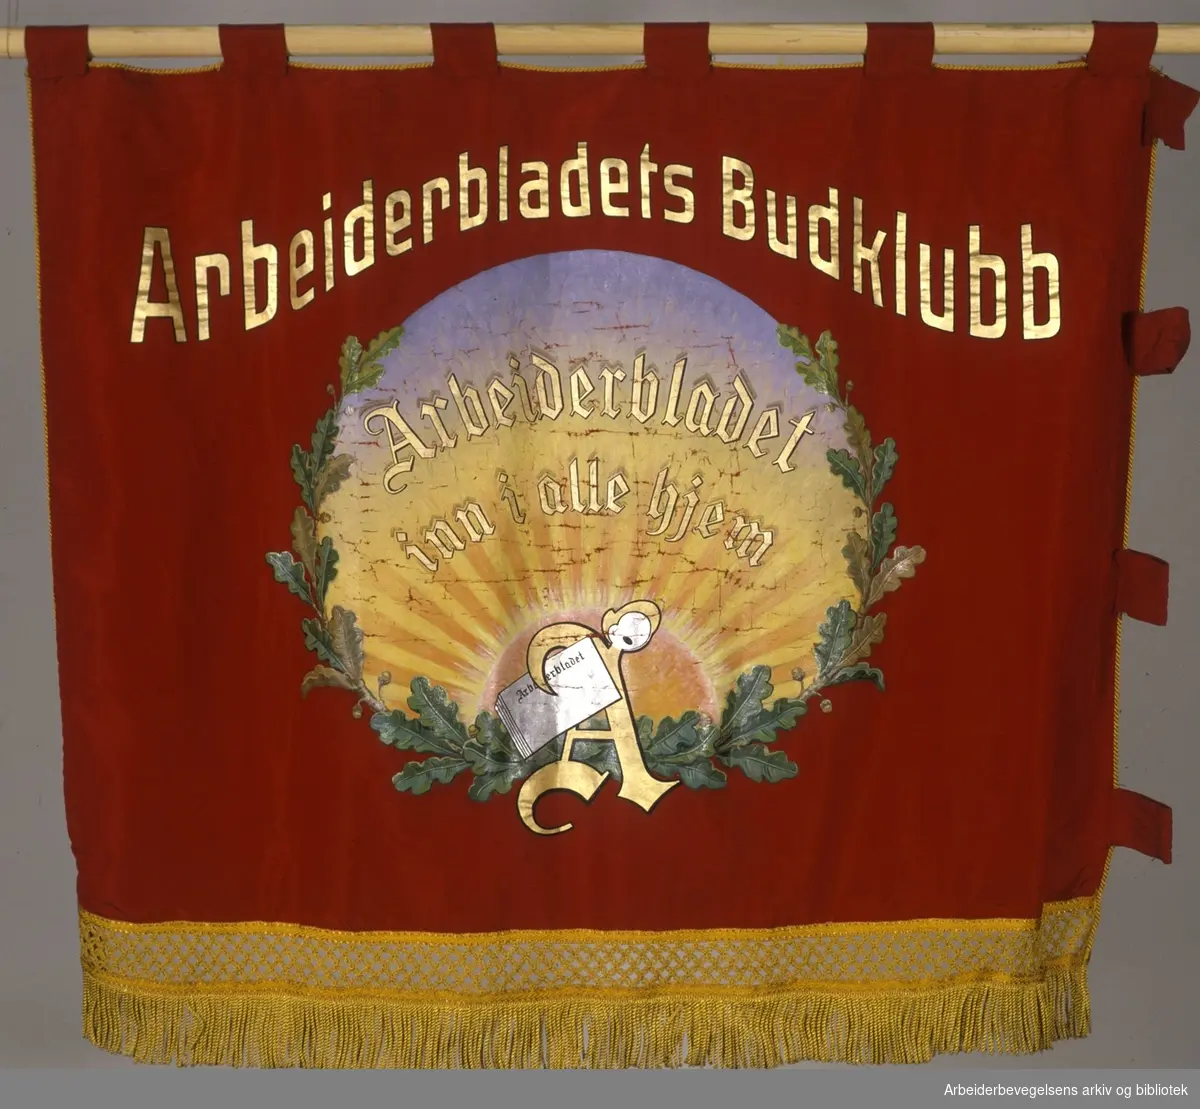 Arbeiderbladets budklubb.Stiftet 3. november 1917..Bakside..Fanetekst: Arbeiderbladets budklubb.Arbeiderbladet inn i alle hjem..